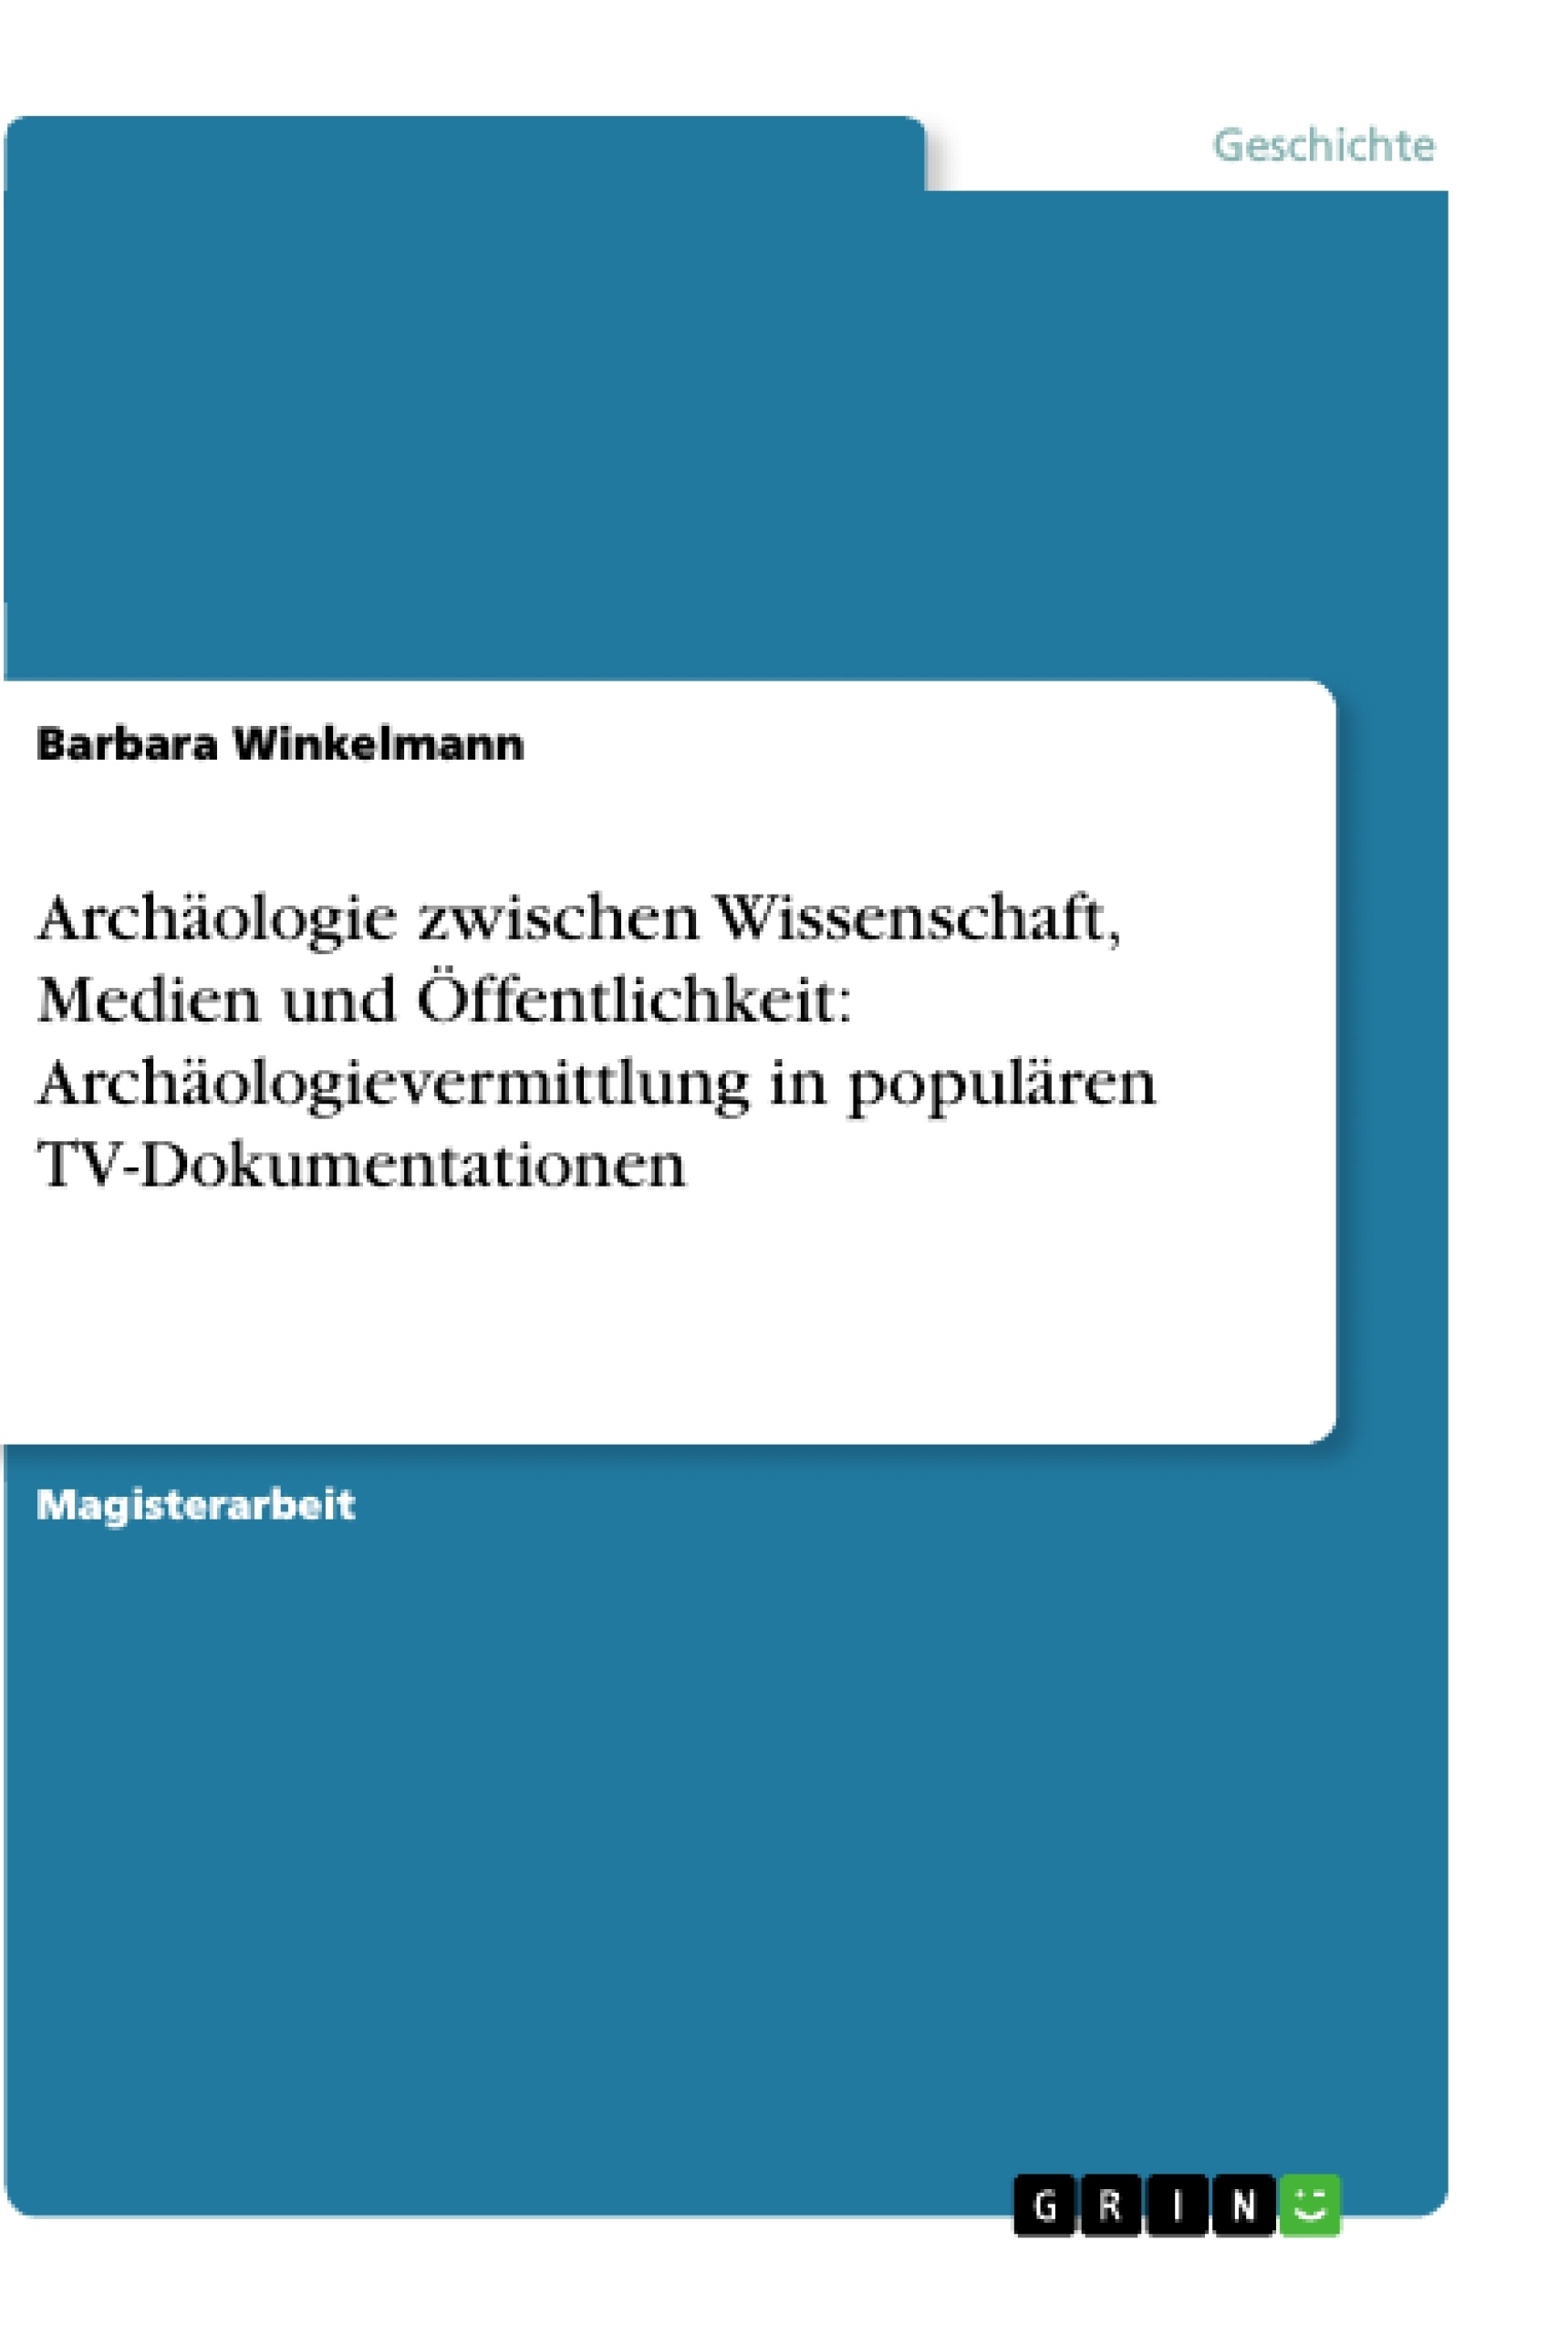 Title: Archäologie zwischen Wissenschaft, Medien und Öffentlichkeit: Archäologievermittlung in populären TV-Dokumentationen